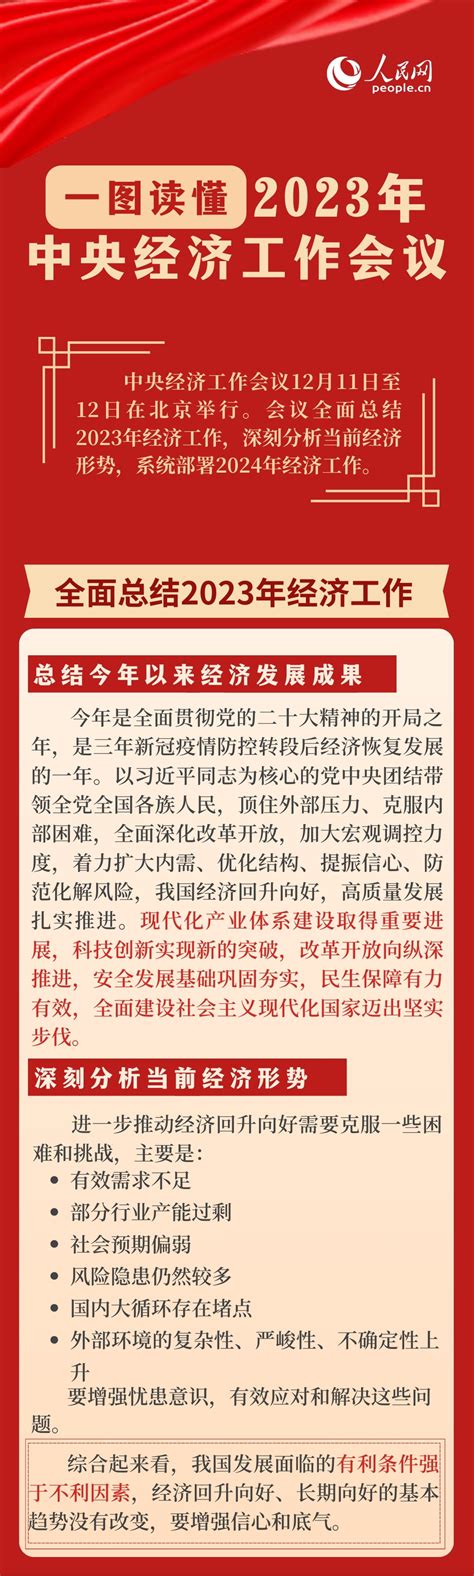 一图读懂2023年中央经济工作会议_张家口新闻网